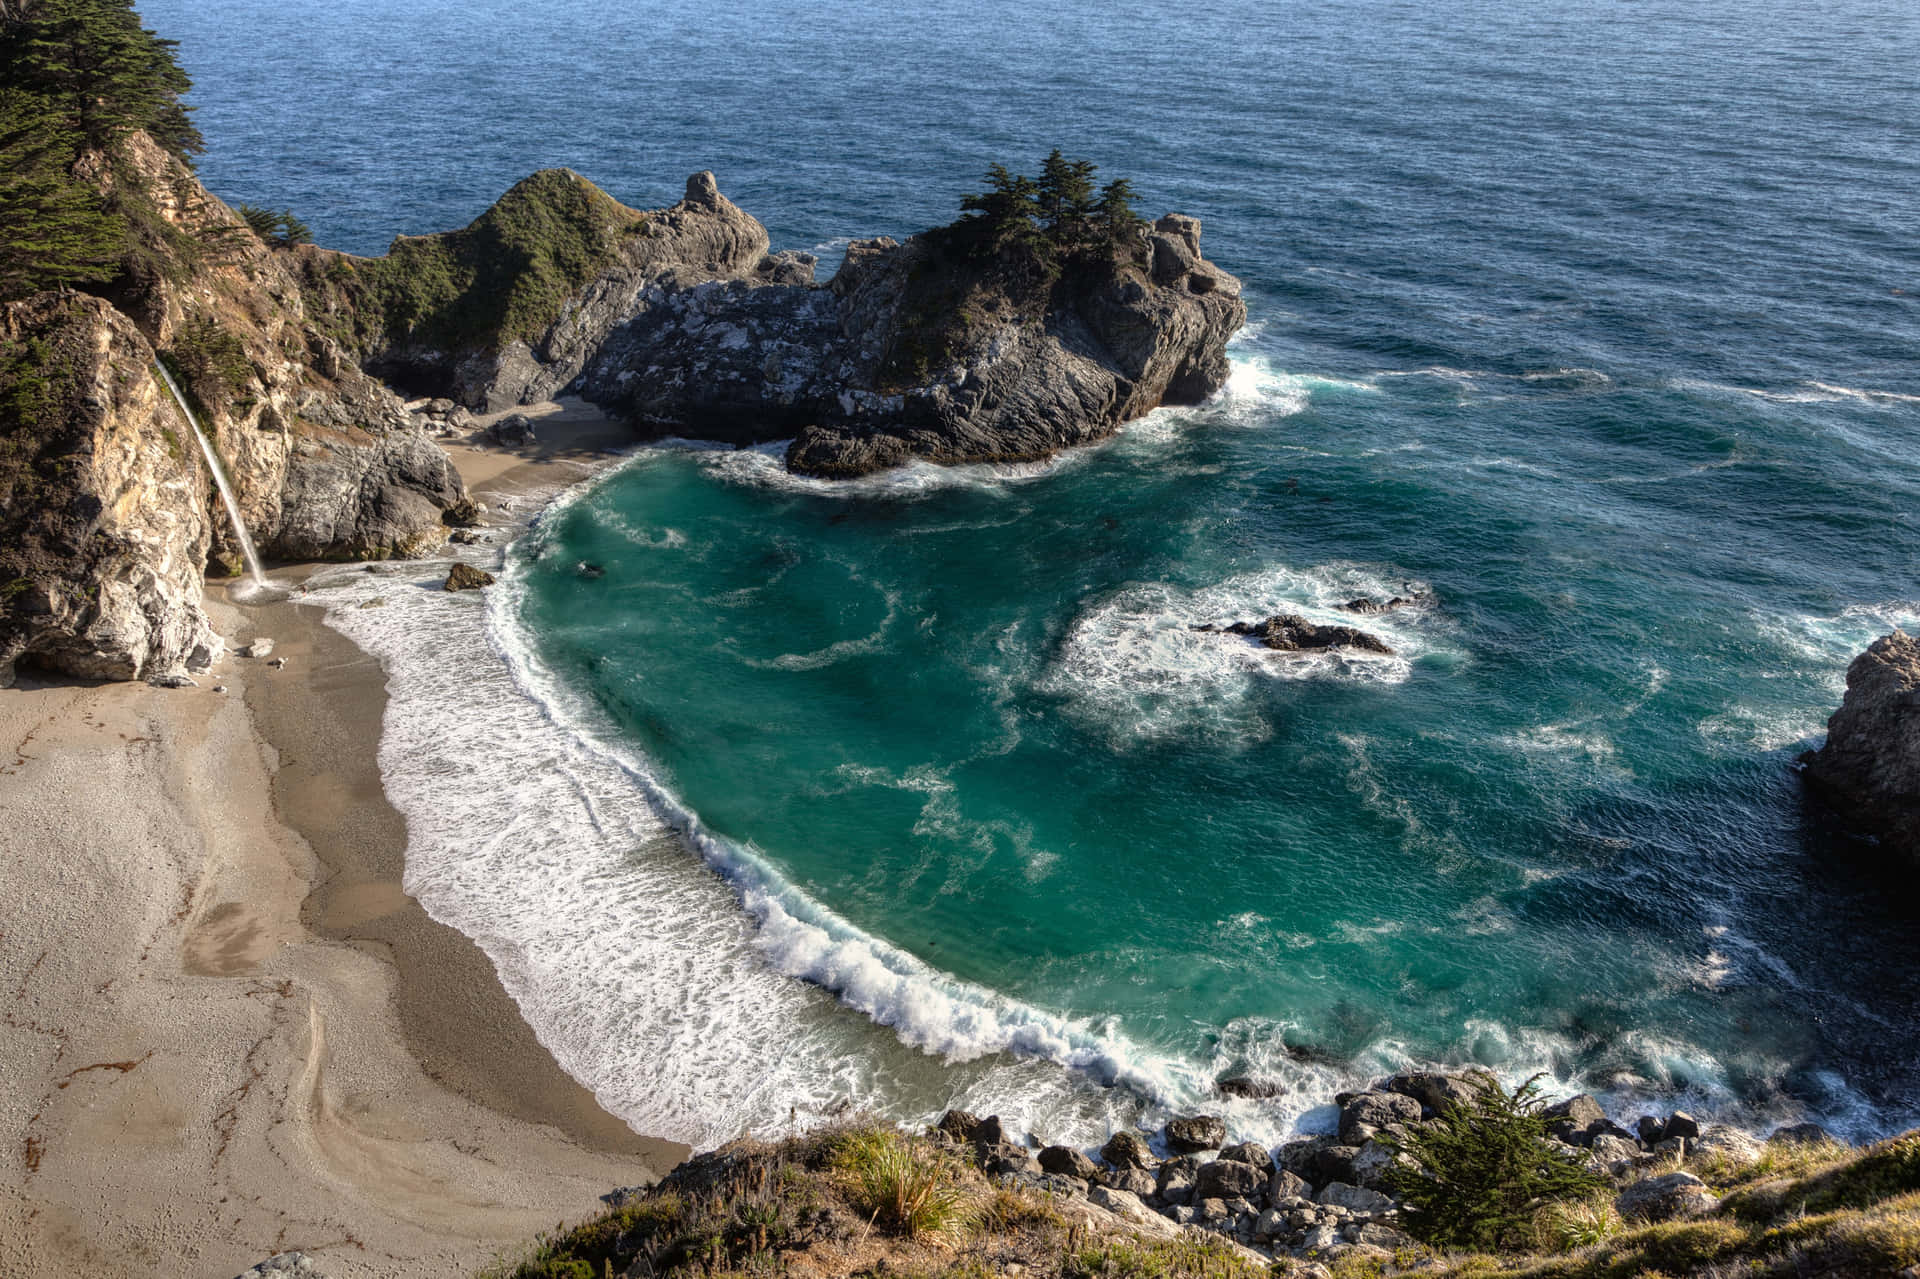 "Breathtaking Views at Big Sur, California"